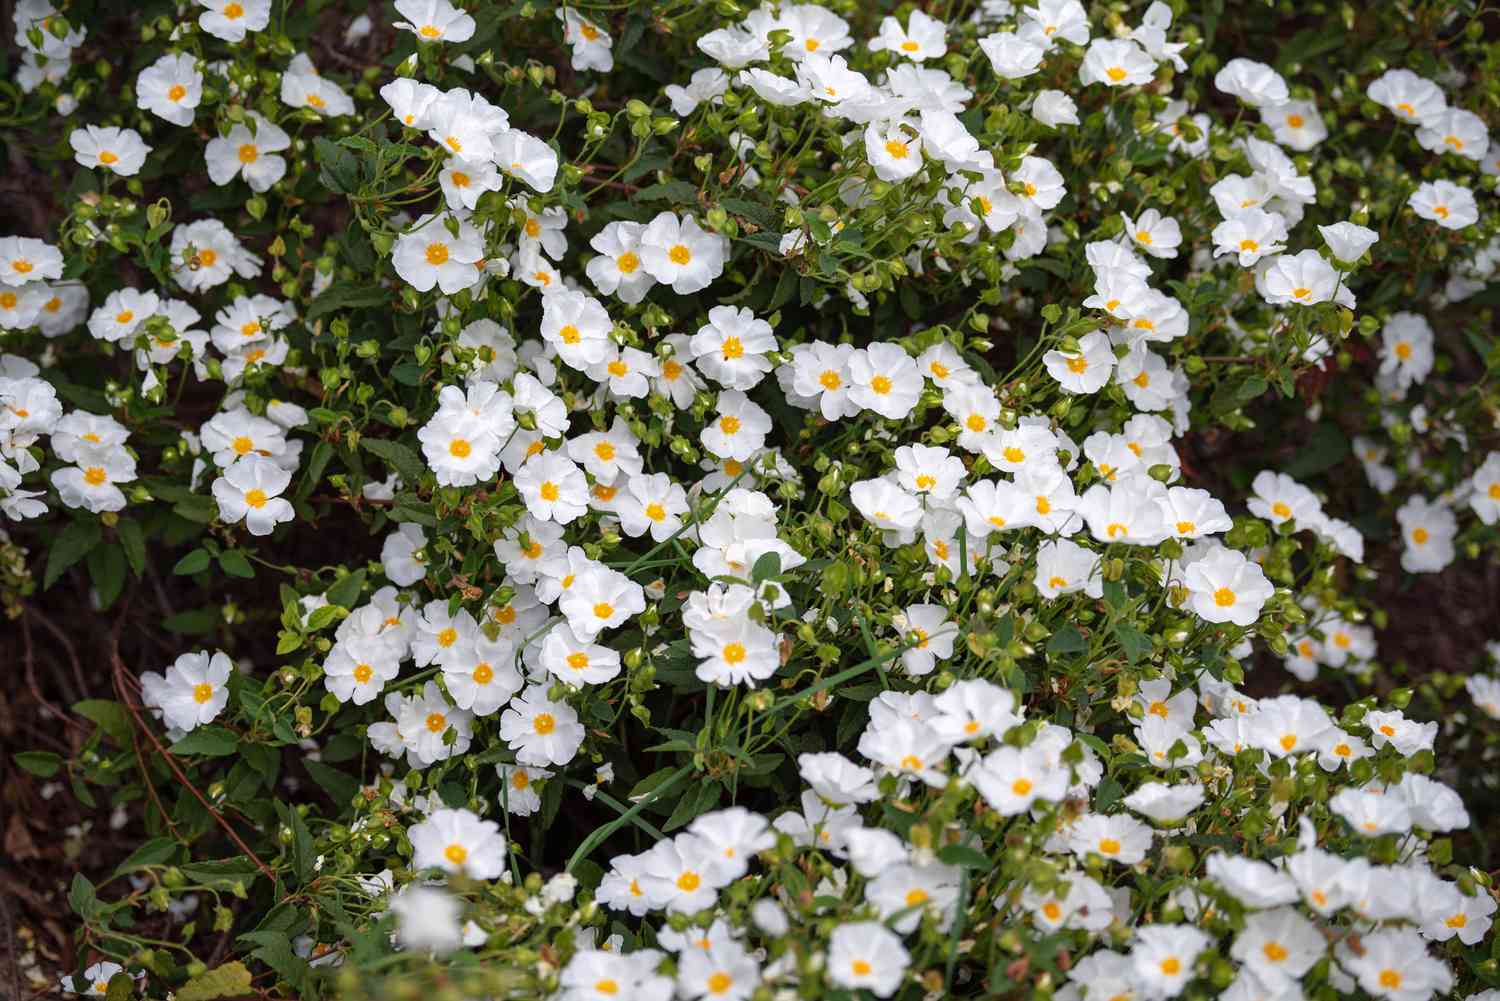 Arbusto de jara cubierto de pequeñas flores blancas con centro amarillo